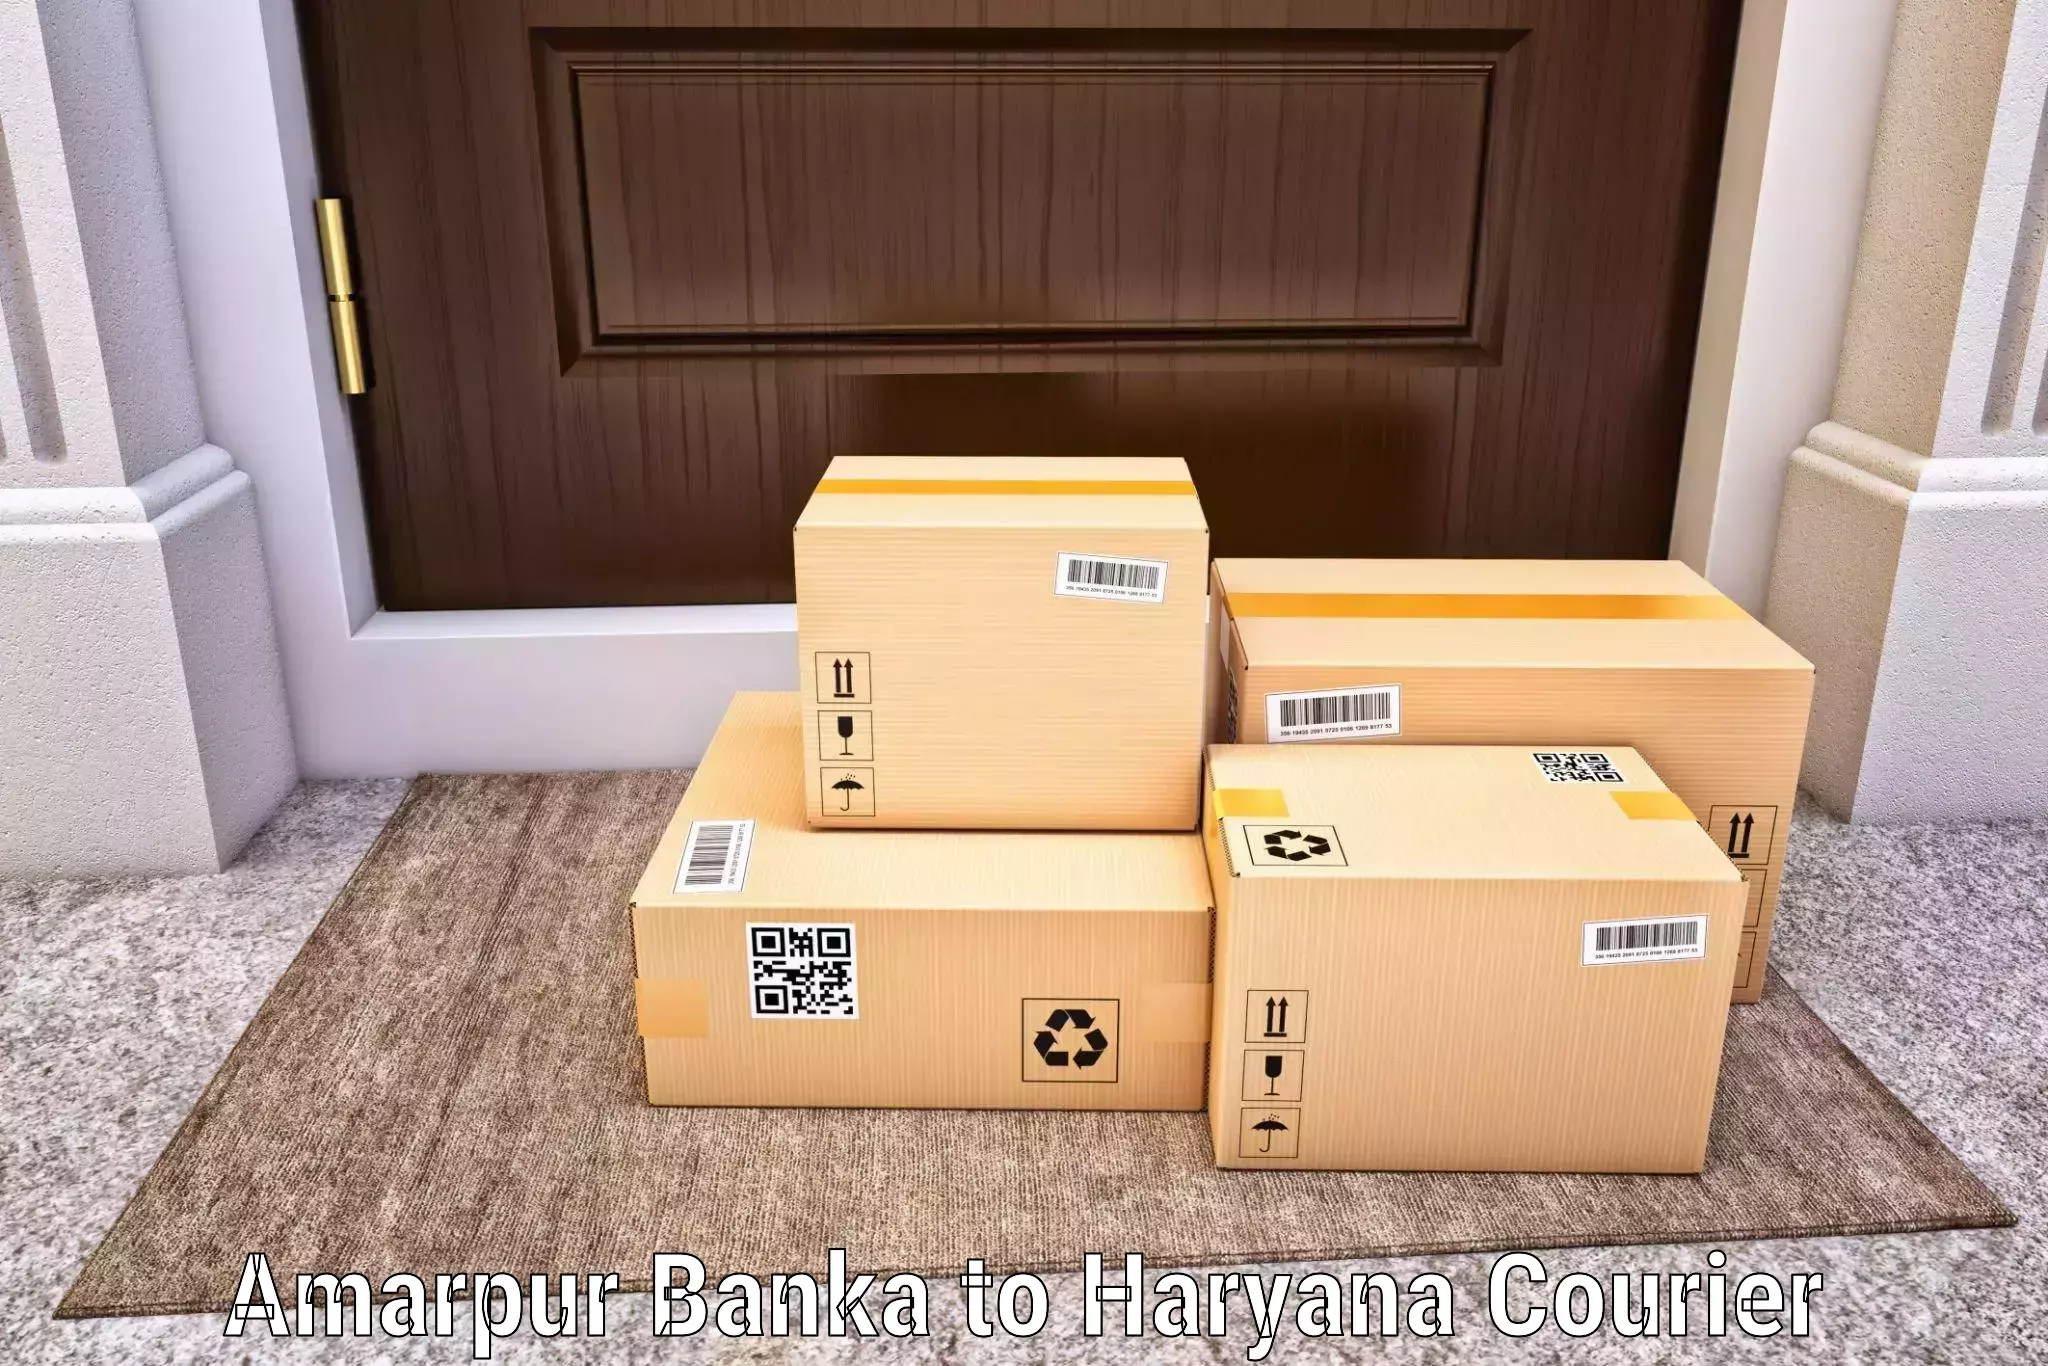 Secure packaging in Amarpur Banka to Barwala